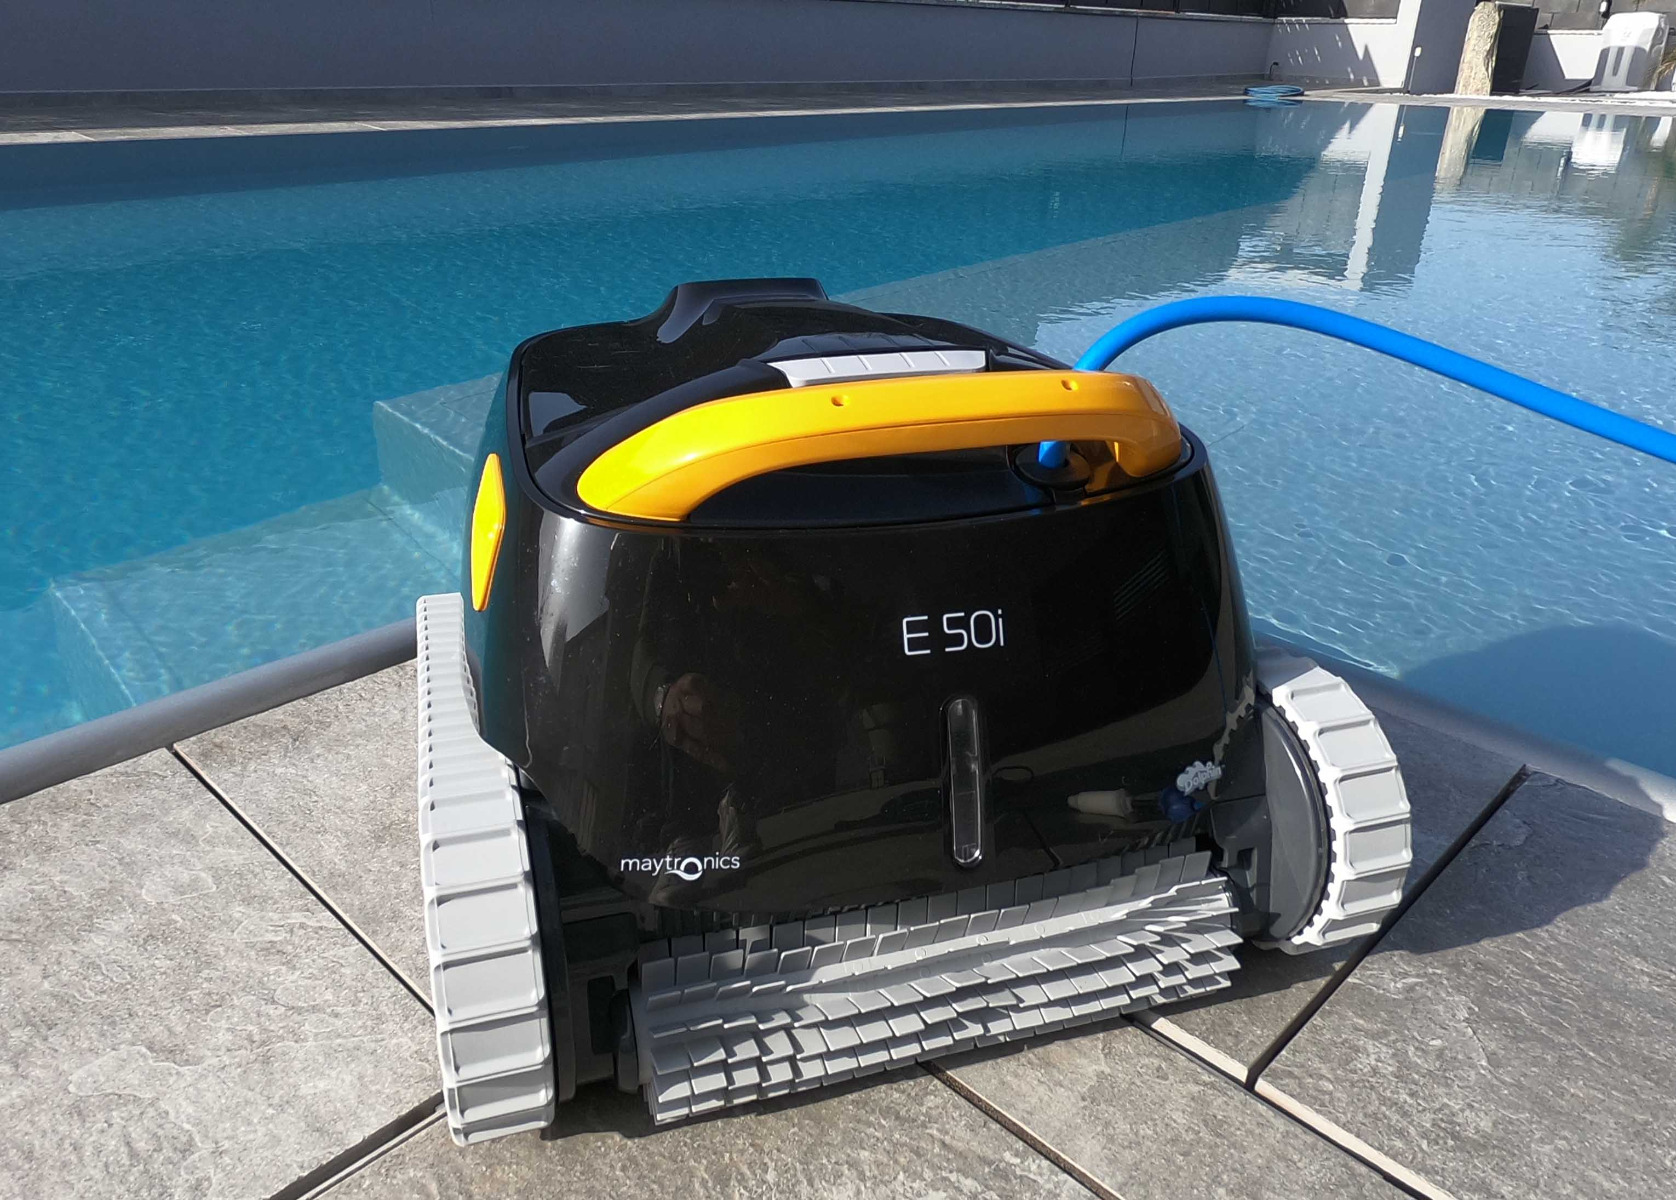 Dolphin E50i, robot per piscina Maytronics. Zavattishop Centro assistenza ufficiale.